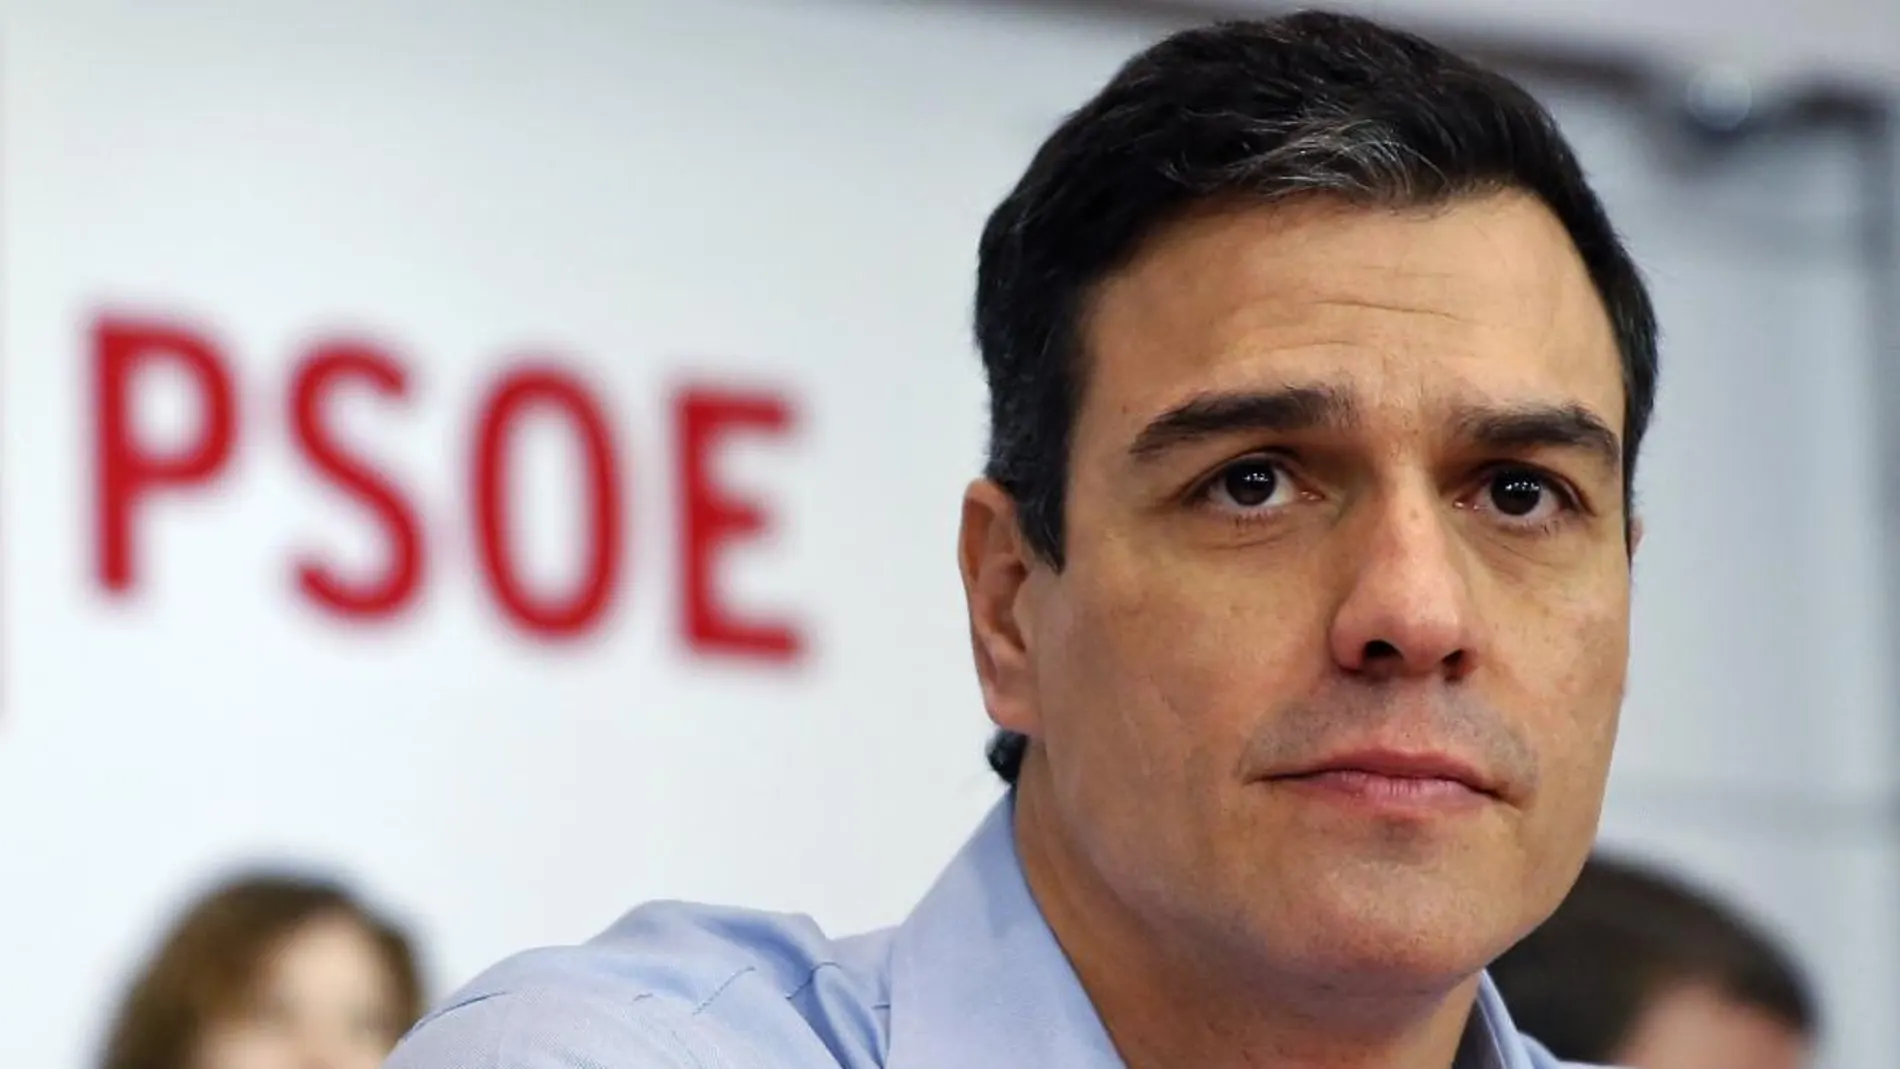 ¿Cree que Pedro Sánchez conseguirá ser presidente del Gobierno?